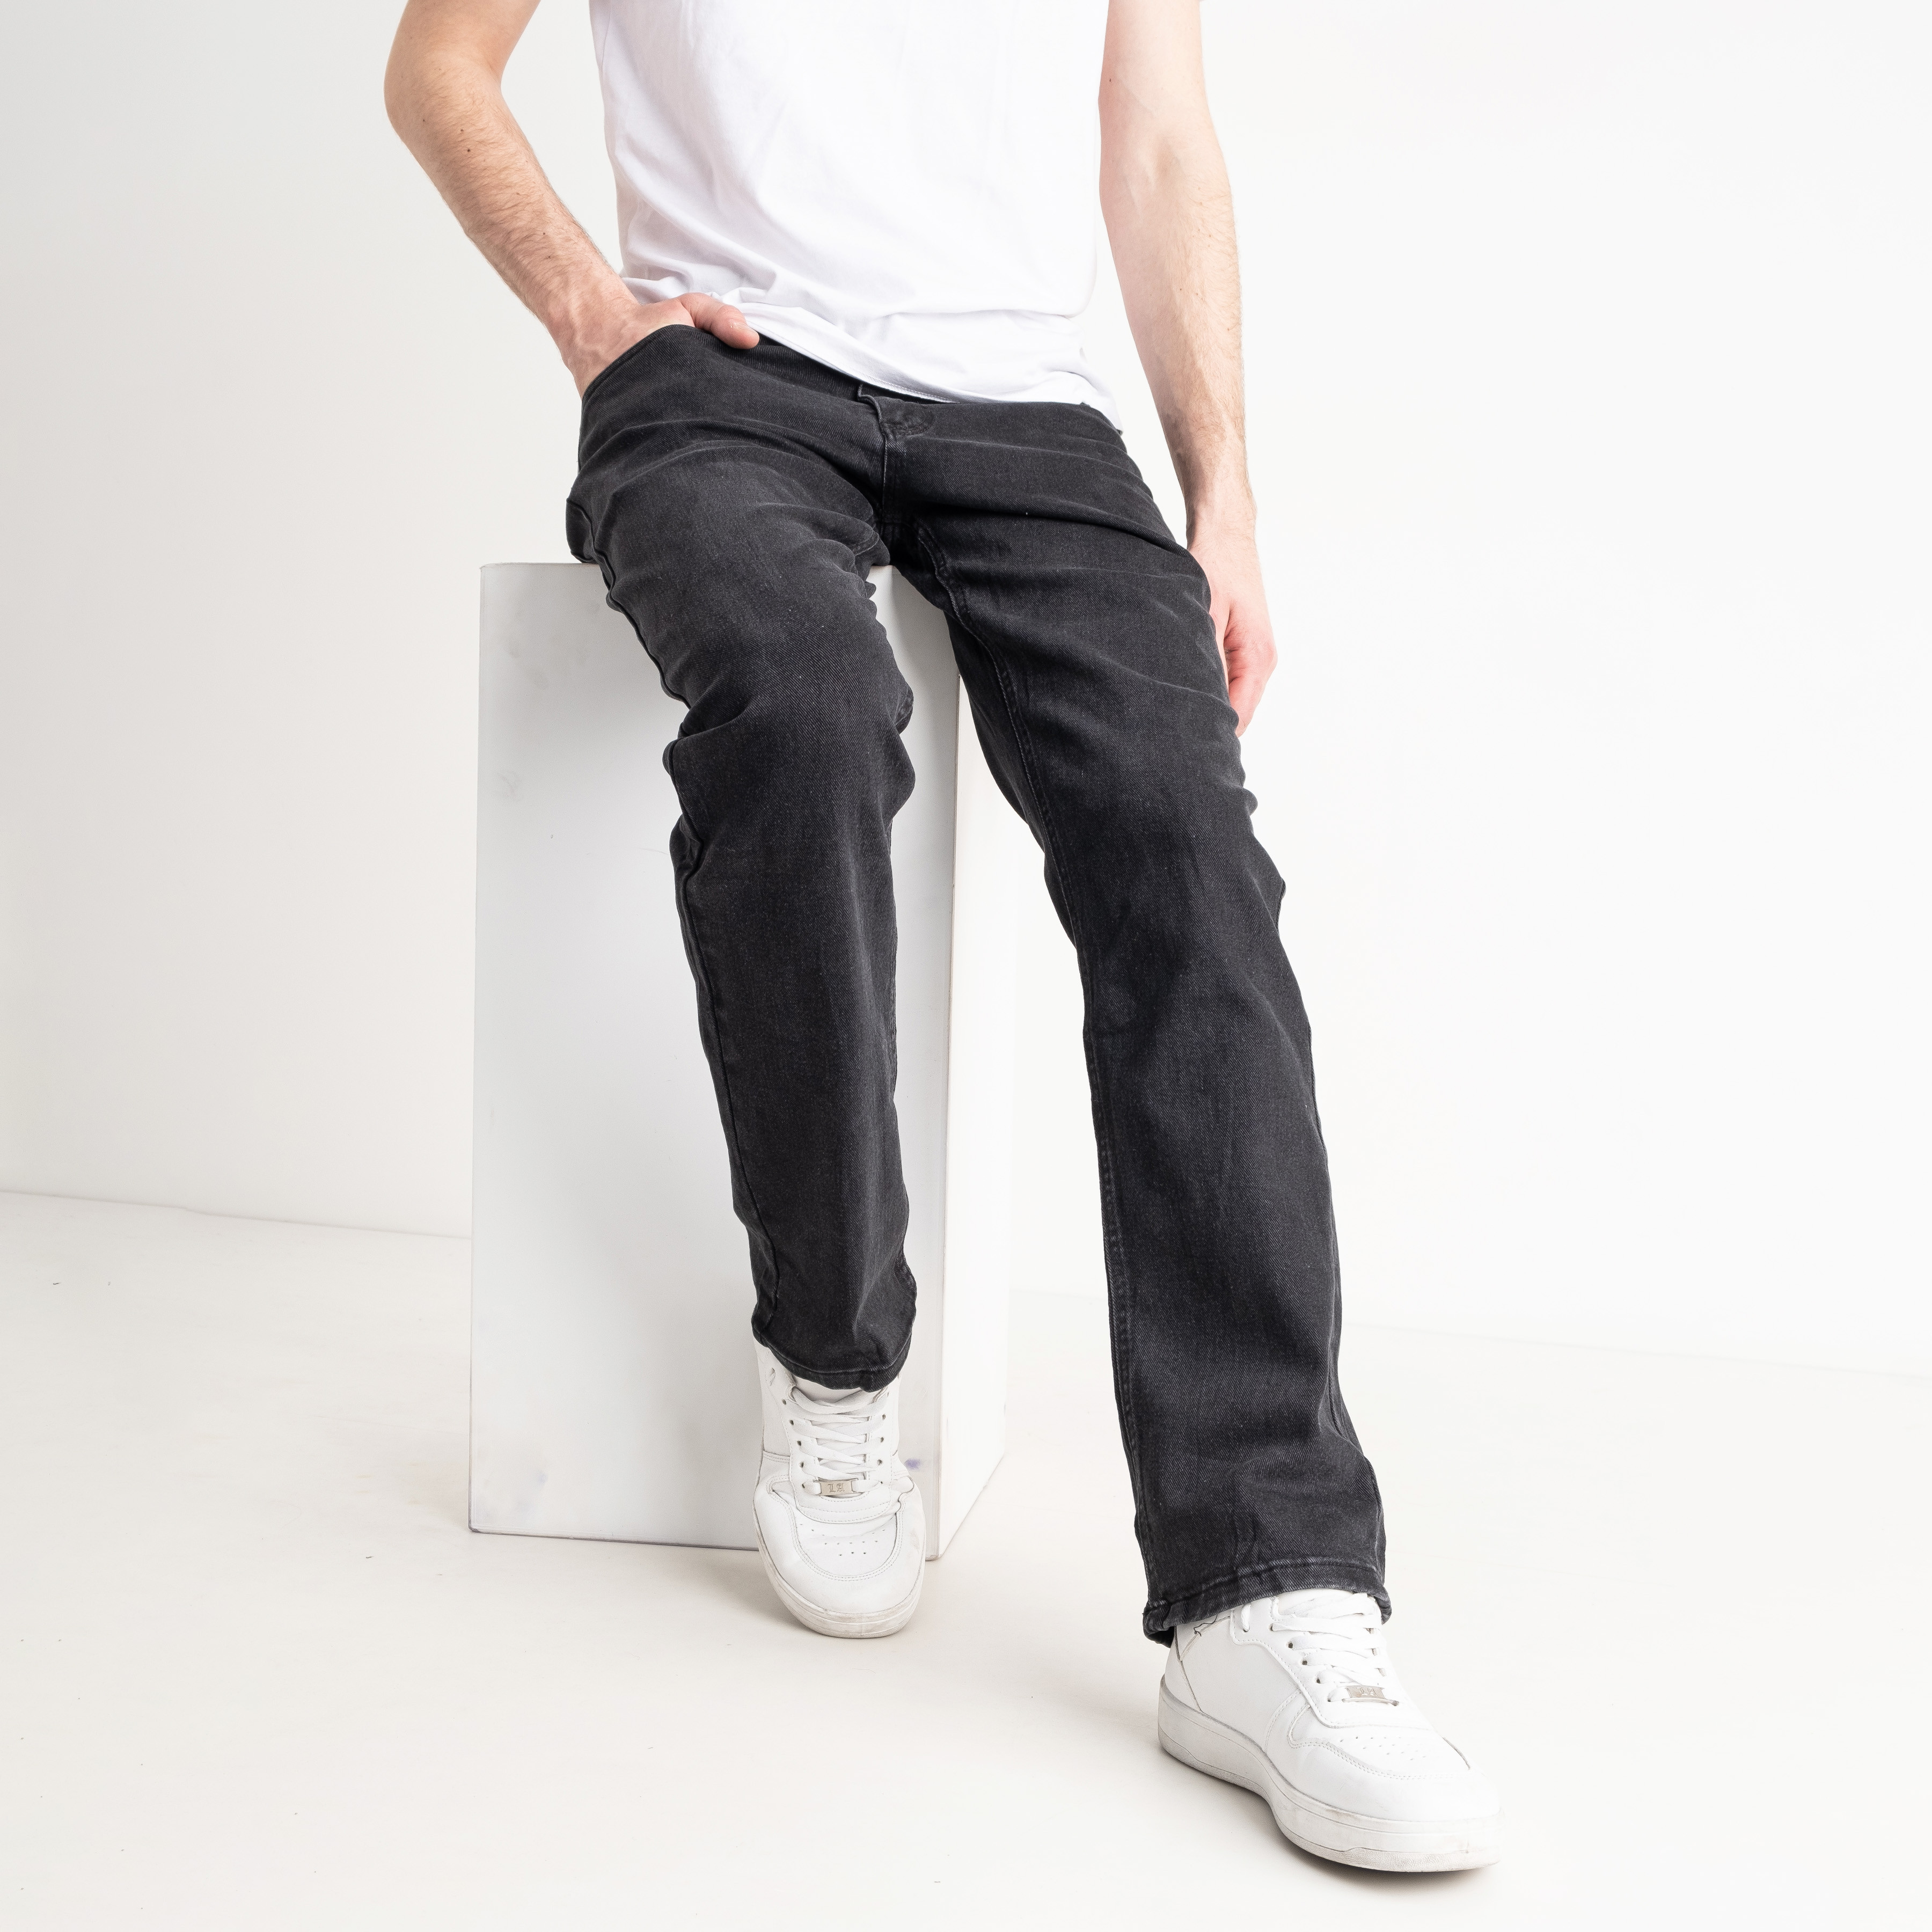 0111 темно-серые мужские джинсы (MONEYTOO, стрейчевые, 8 ед. размеры полубатал: 32. 33. 34. 35. 36. 38. 40. 42)